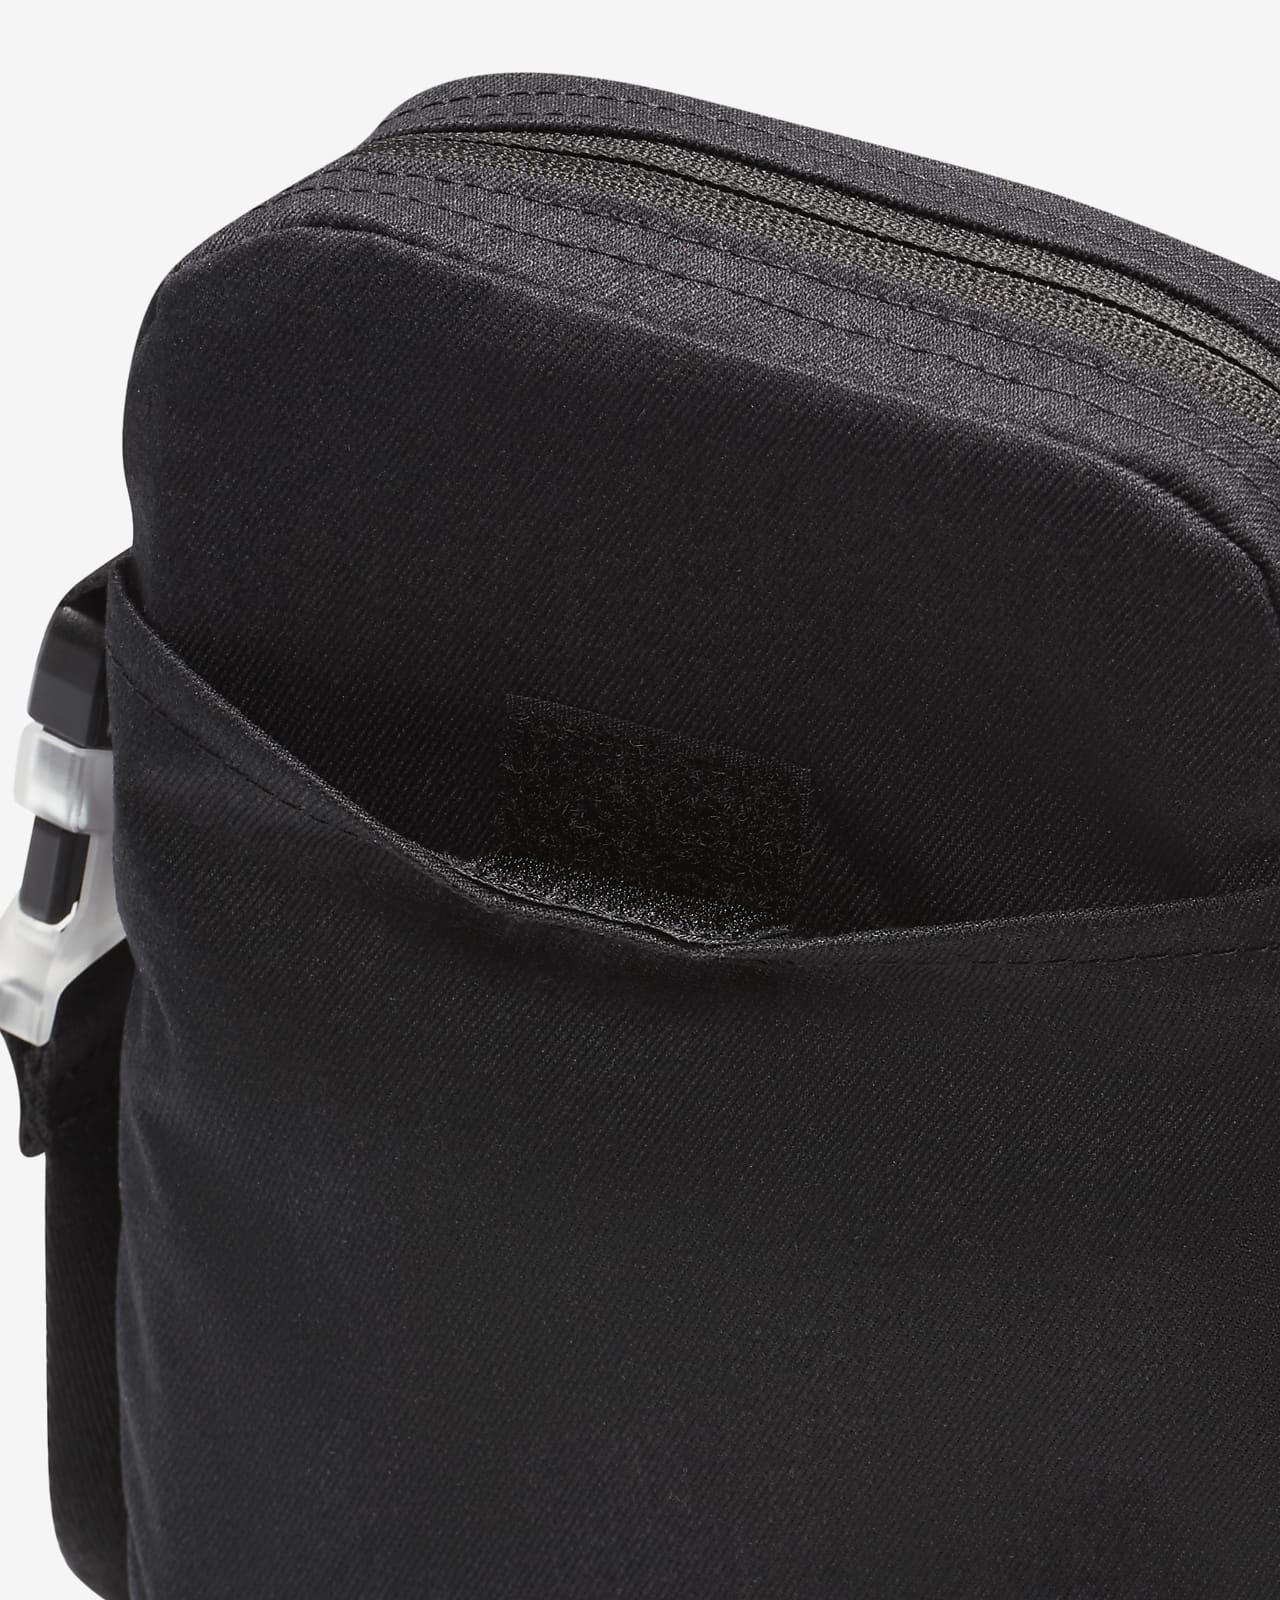 Elemental Small Shoulder Bag | Calvin Klein